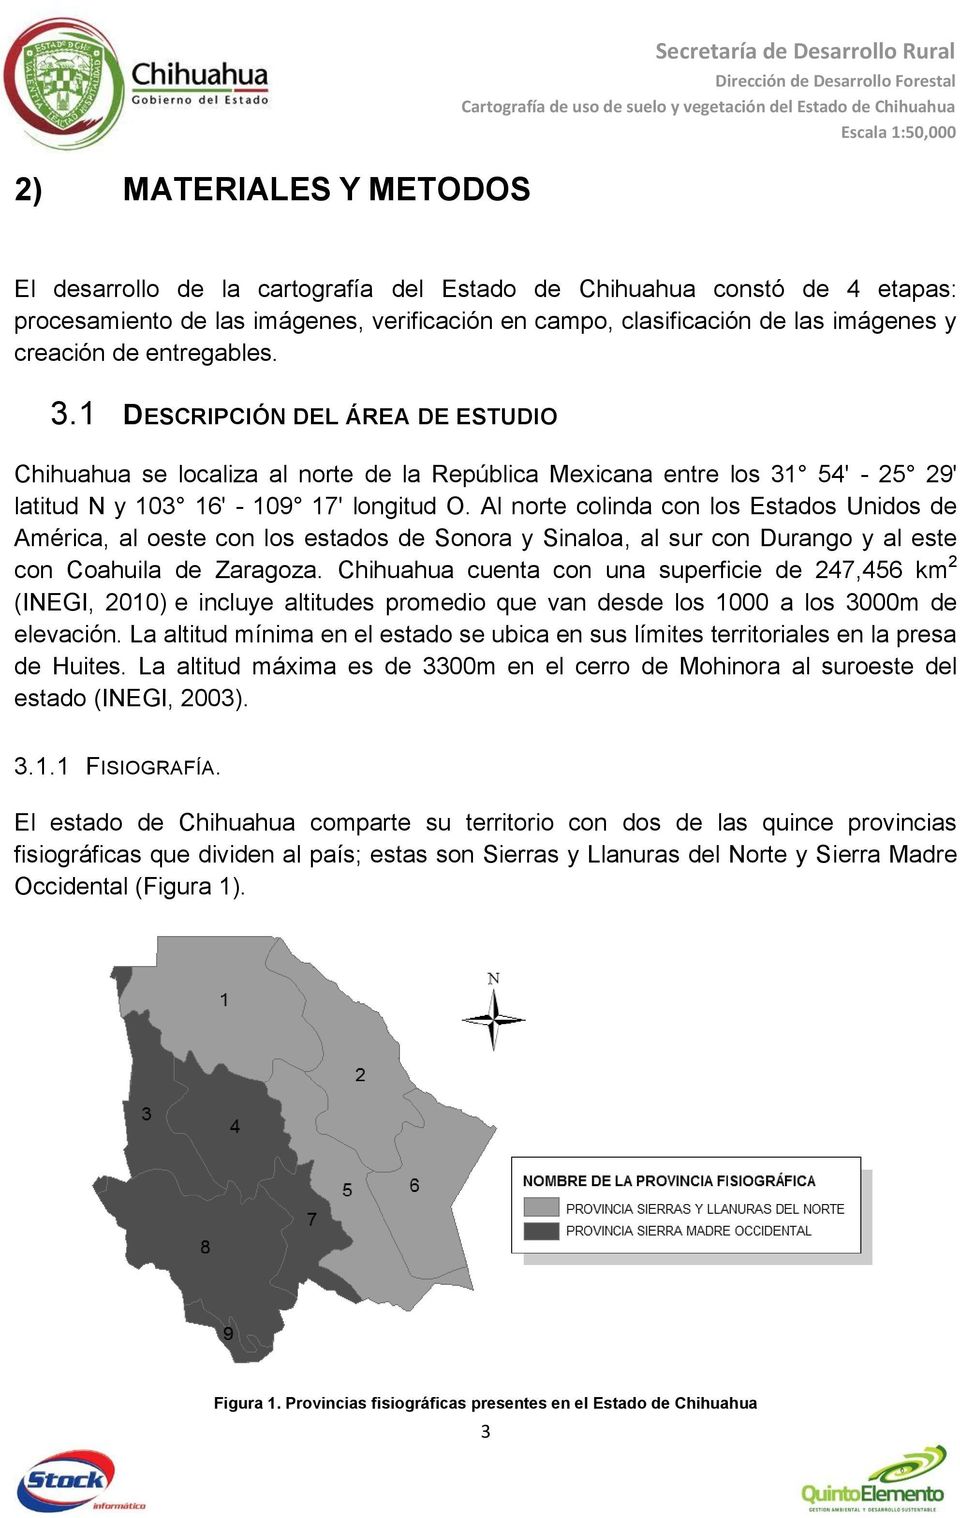 1 DESCRIPCIÓN DEL ÁREA DE ESTUDIO Chihuahua se localiza al norte de la República Mexicana entre los 31 54' - 25 29' latitud N y 103 16' - 109 17' longitud O.